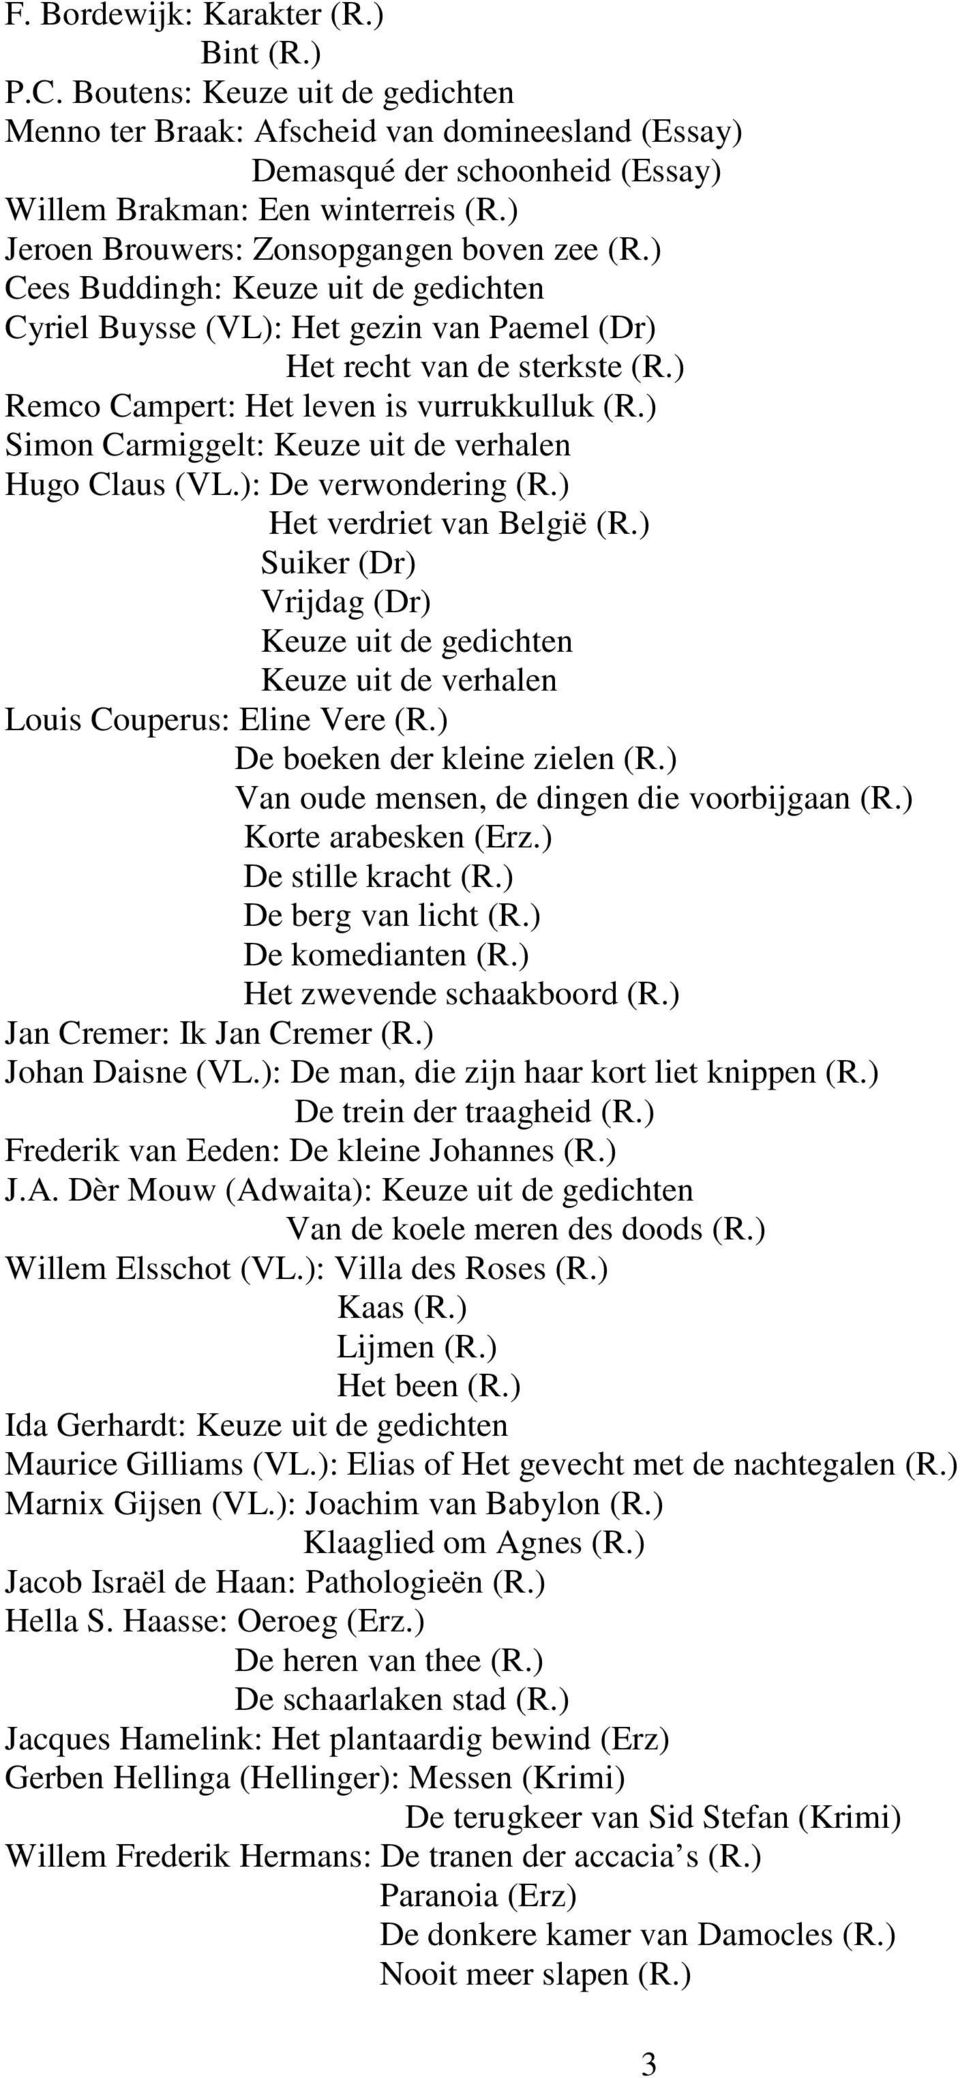 ) Simon Carmiggelt: Hugo Claus (VL.): De verwondering (R.) Het verdriet van België (R.) Suiker (Dr) Vrijdag (Dr) Louis Couperus: Eline Vere (R.) De boeken der kleine zielen (R.